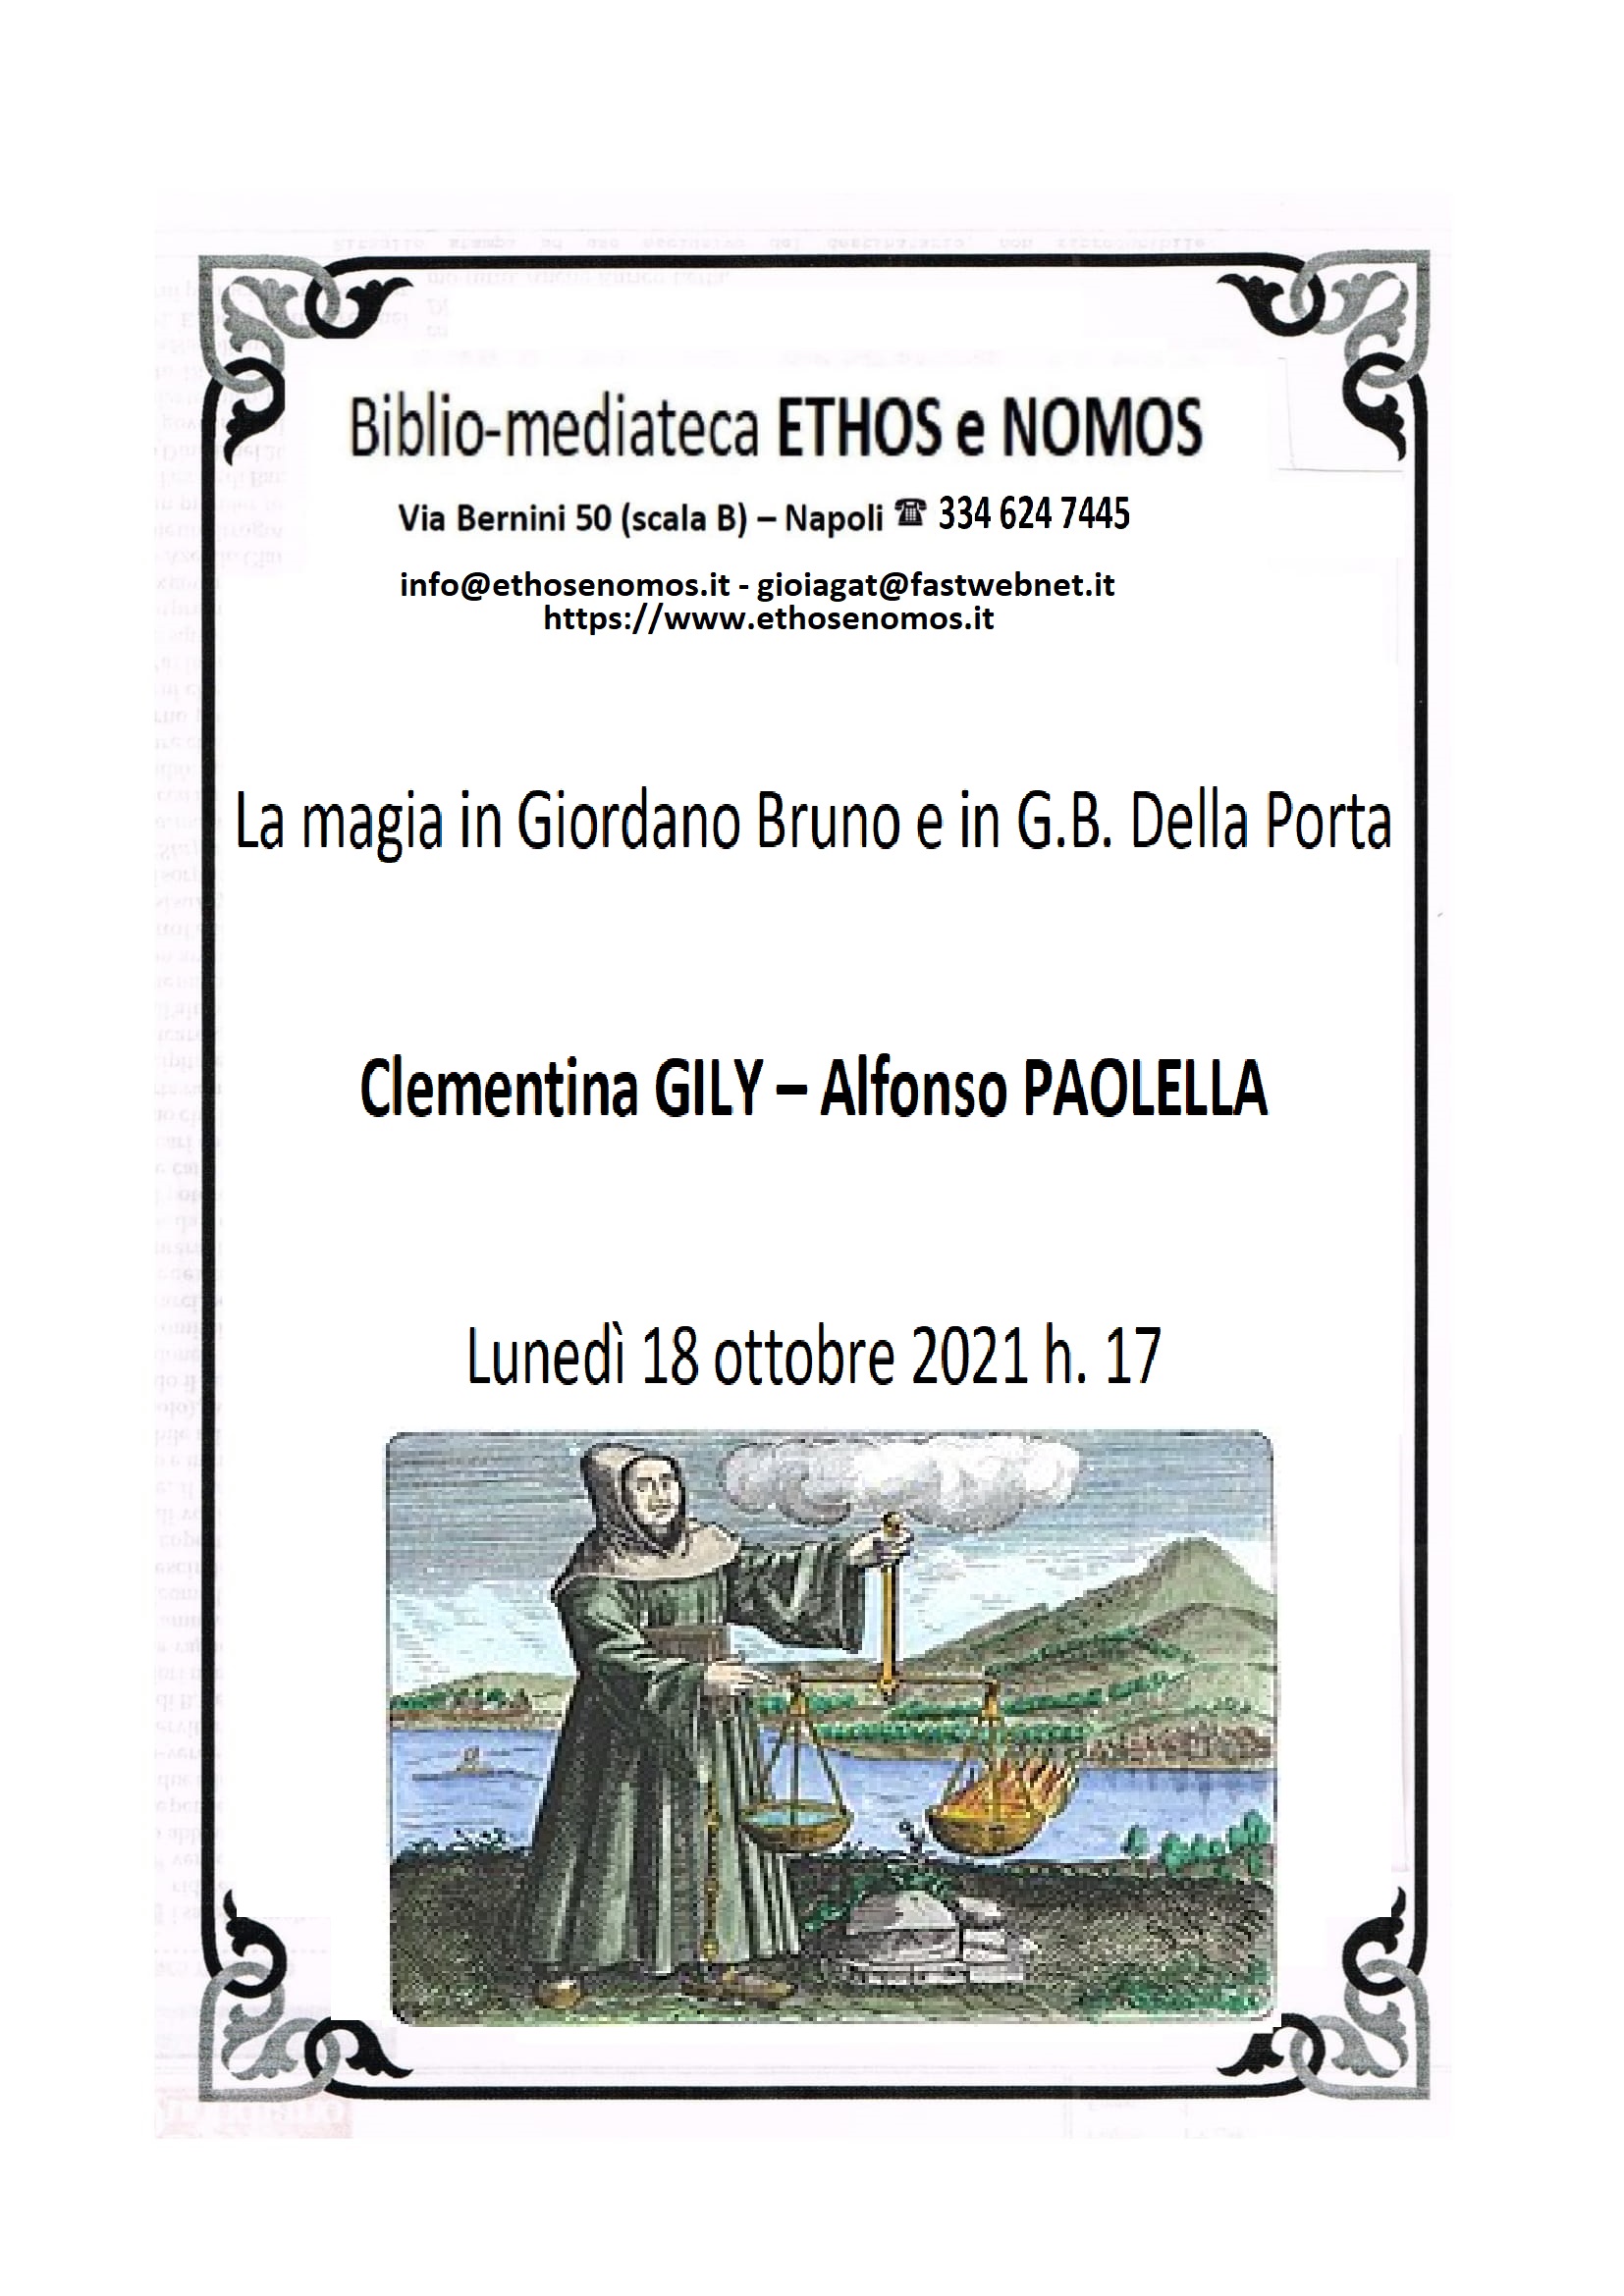 CLEMENTINA GILY - ALFONSO PAOLELLA: La magia in Giordano Bruno e G. B. Della Porta